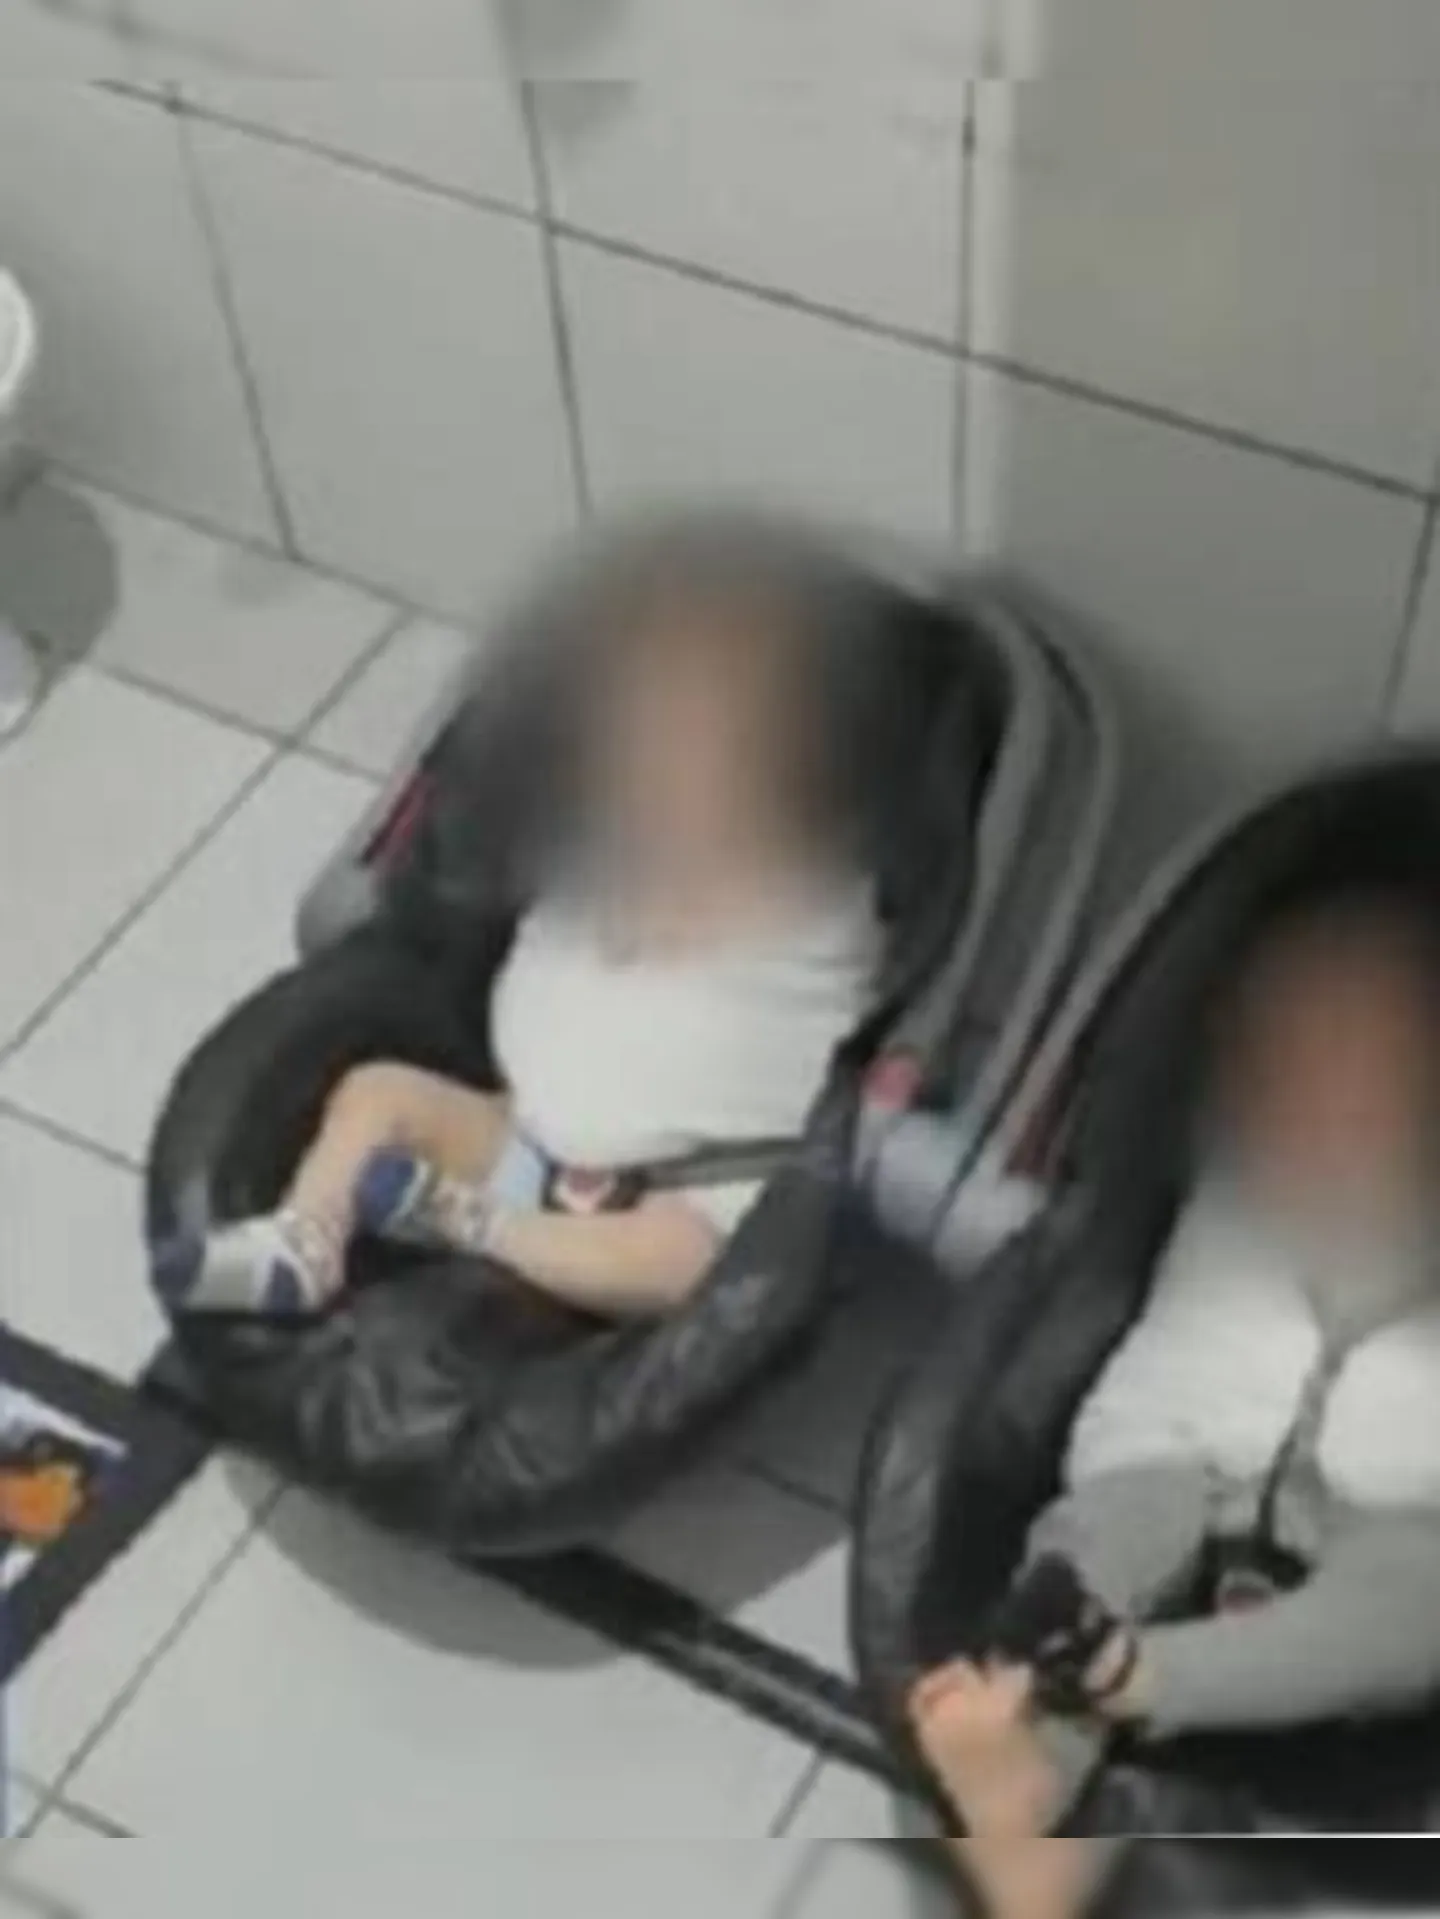 O caso ganhou repercussão apoós vídeos de bebês sofrendo maus-tratos viralizarem nas redes sociais